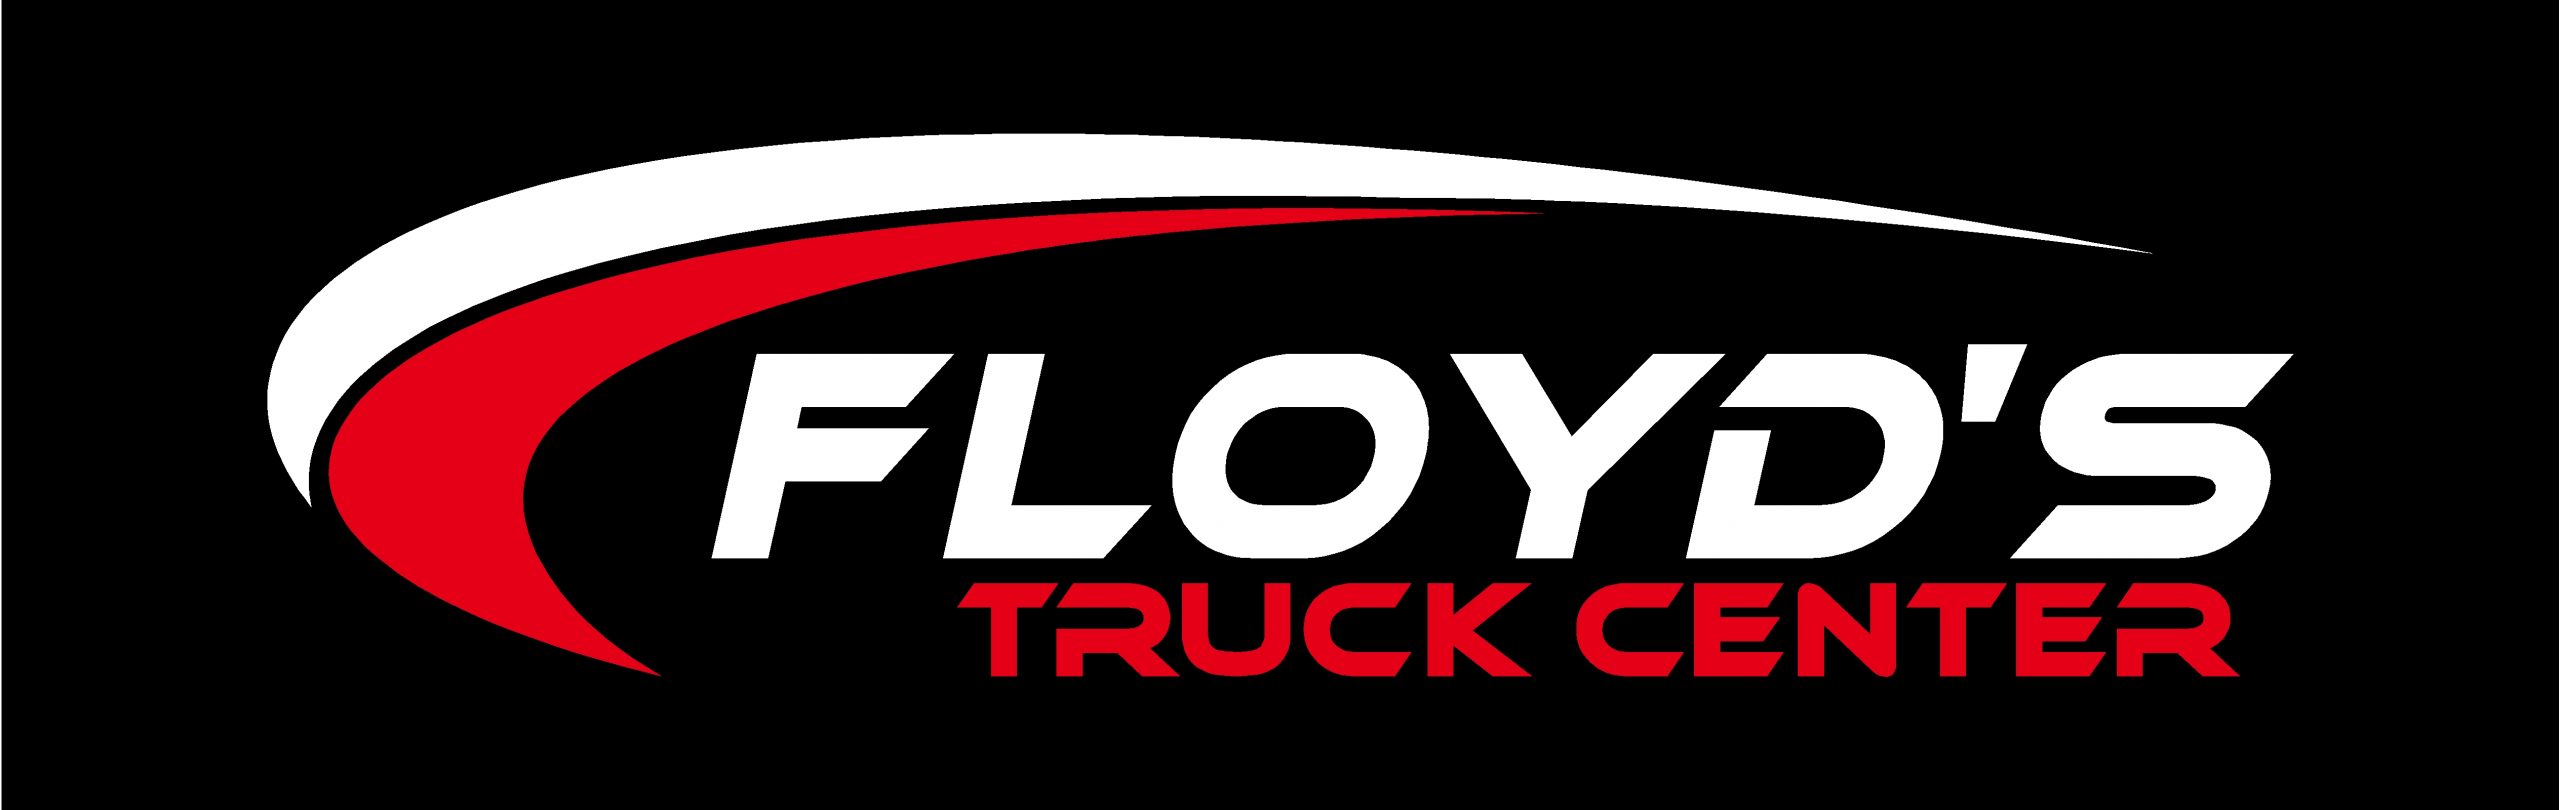 Floyd’s Truck Center